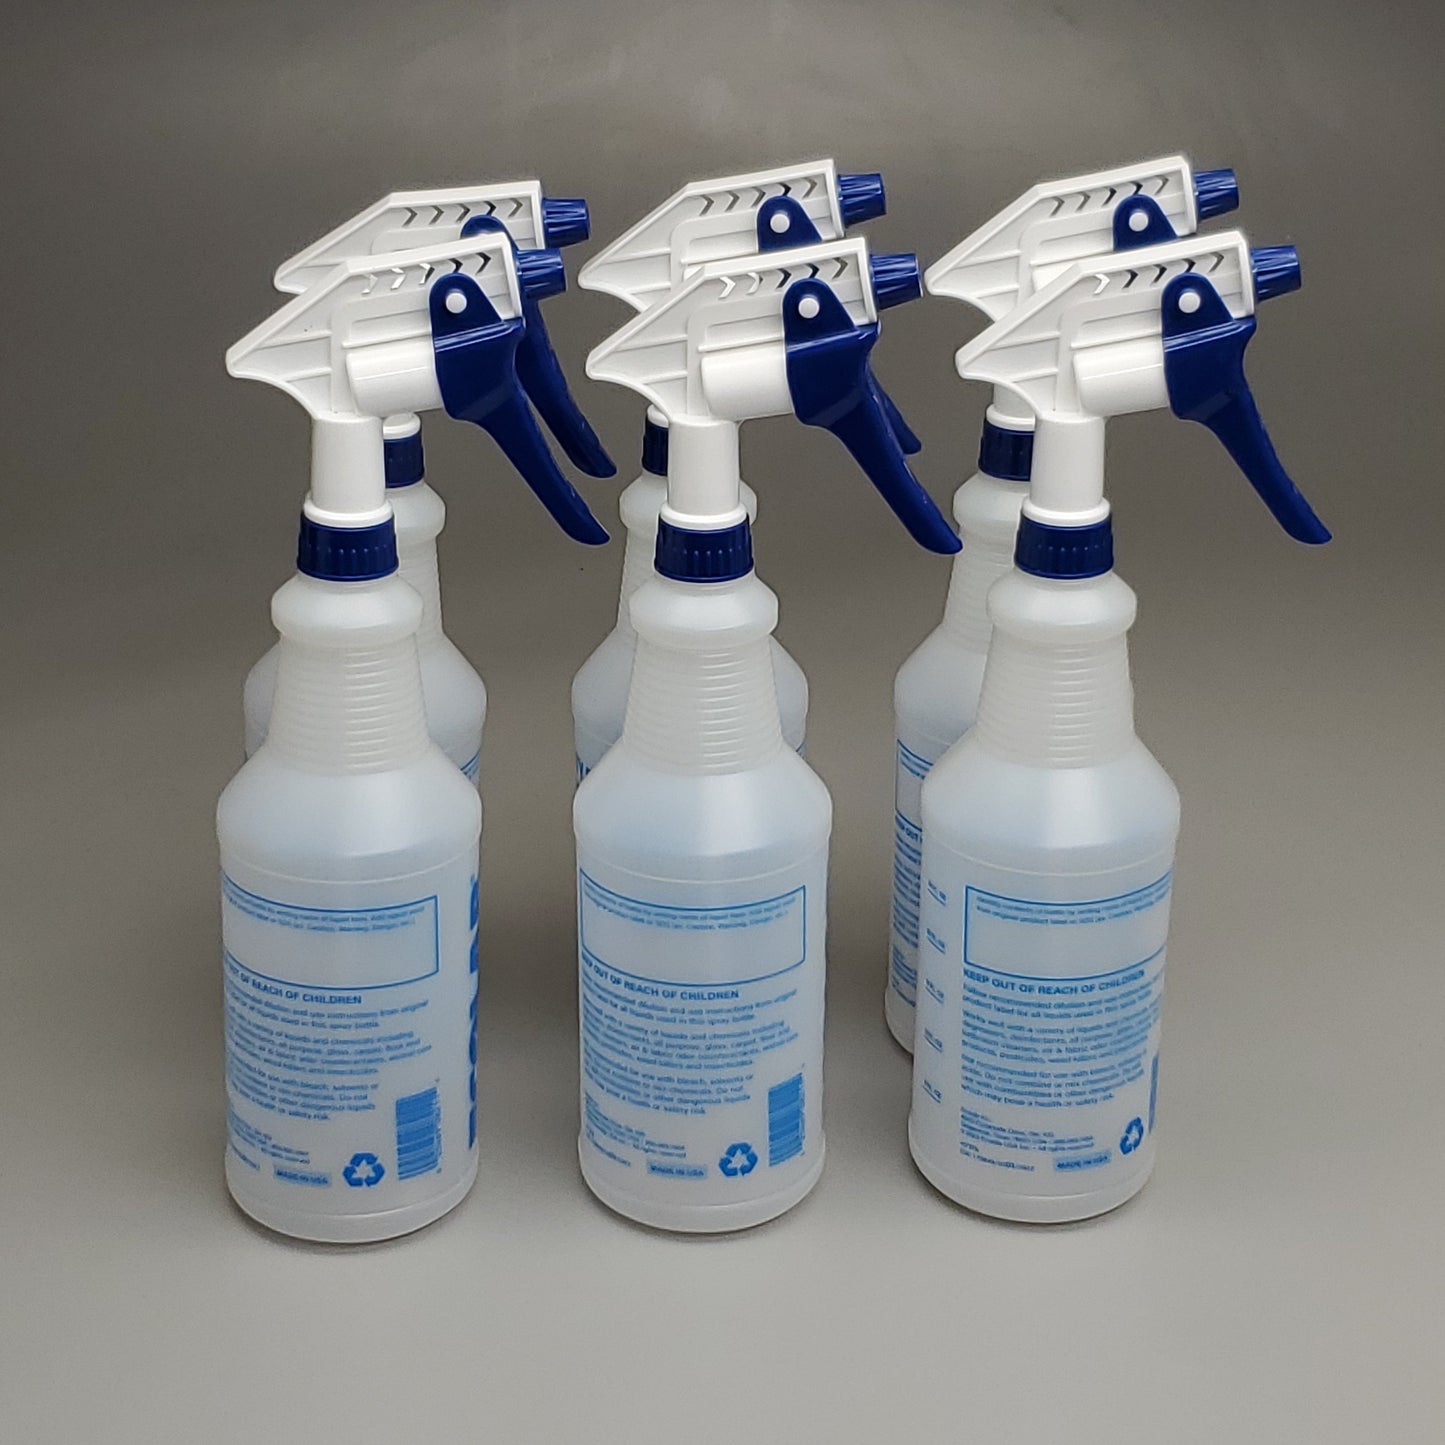 ZA@ ECOLAB 6 Pack of Heavy Duty Spray Bottles 32 fl oz 53004560 (New) B